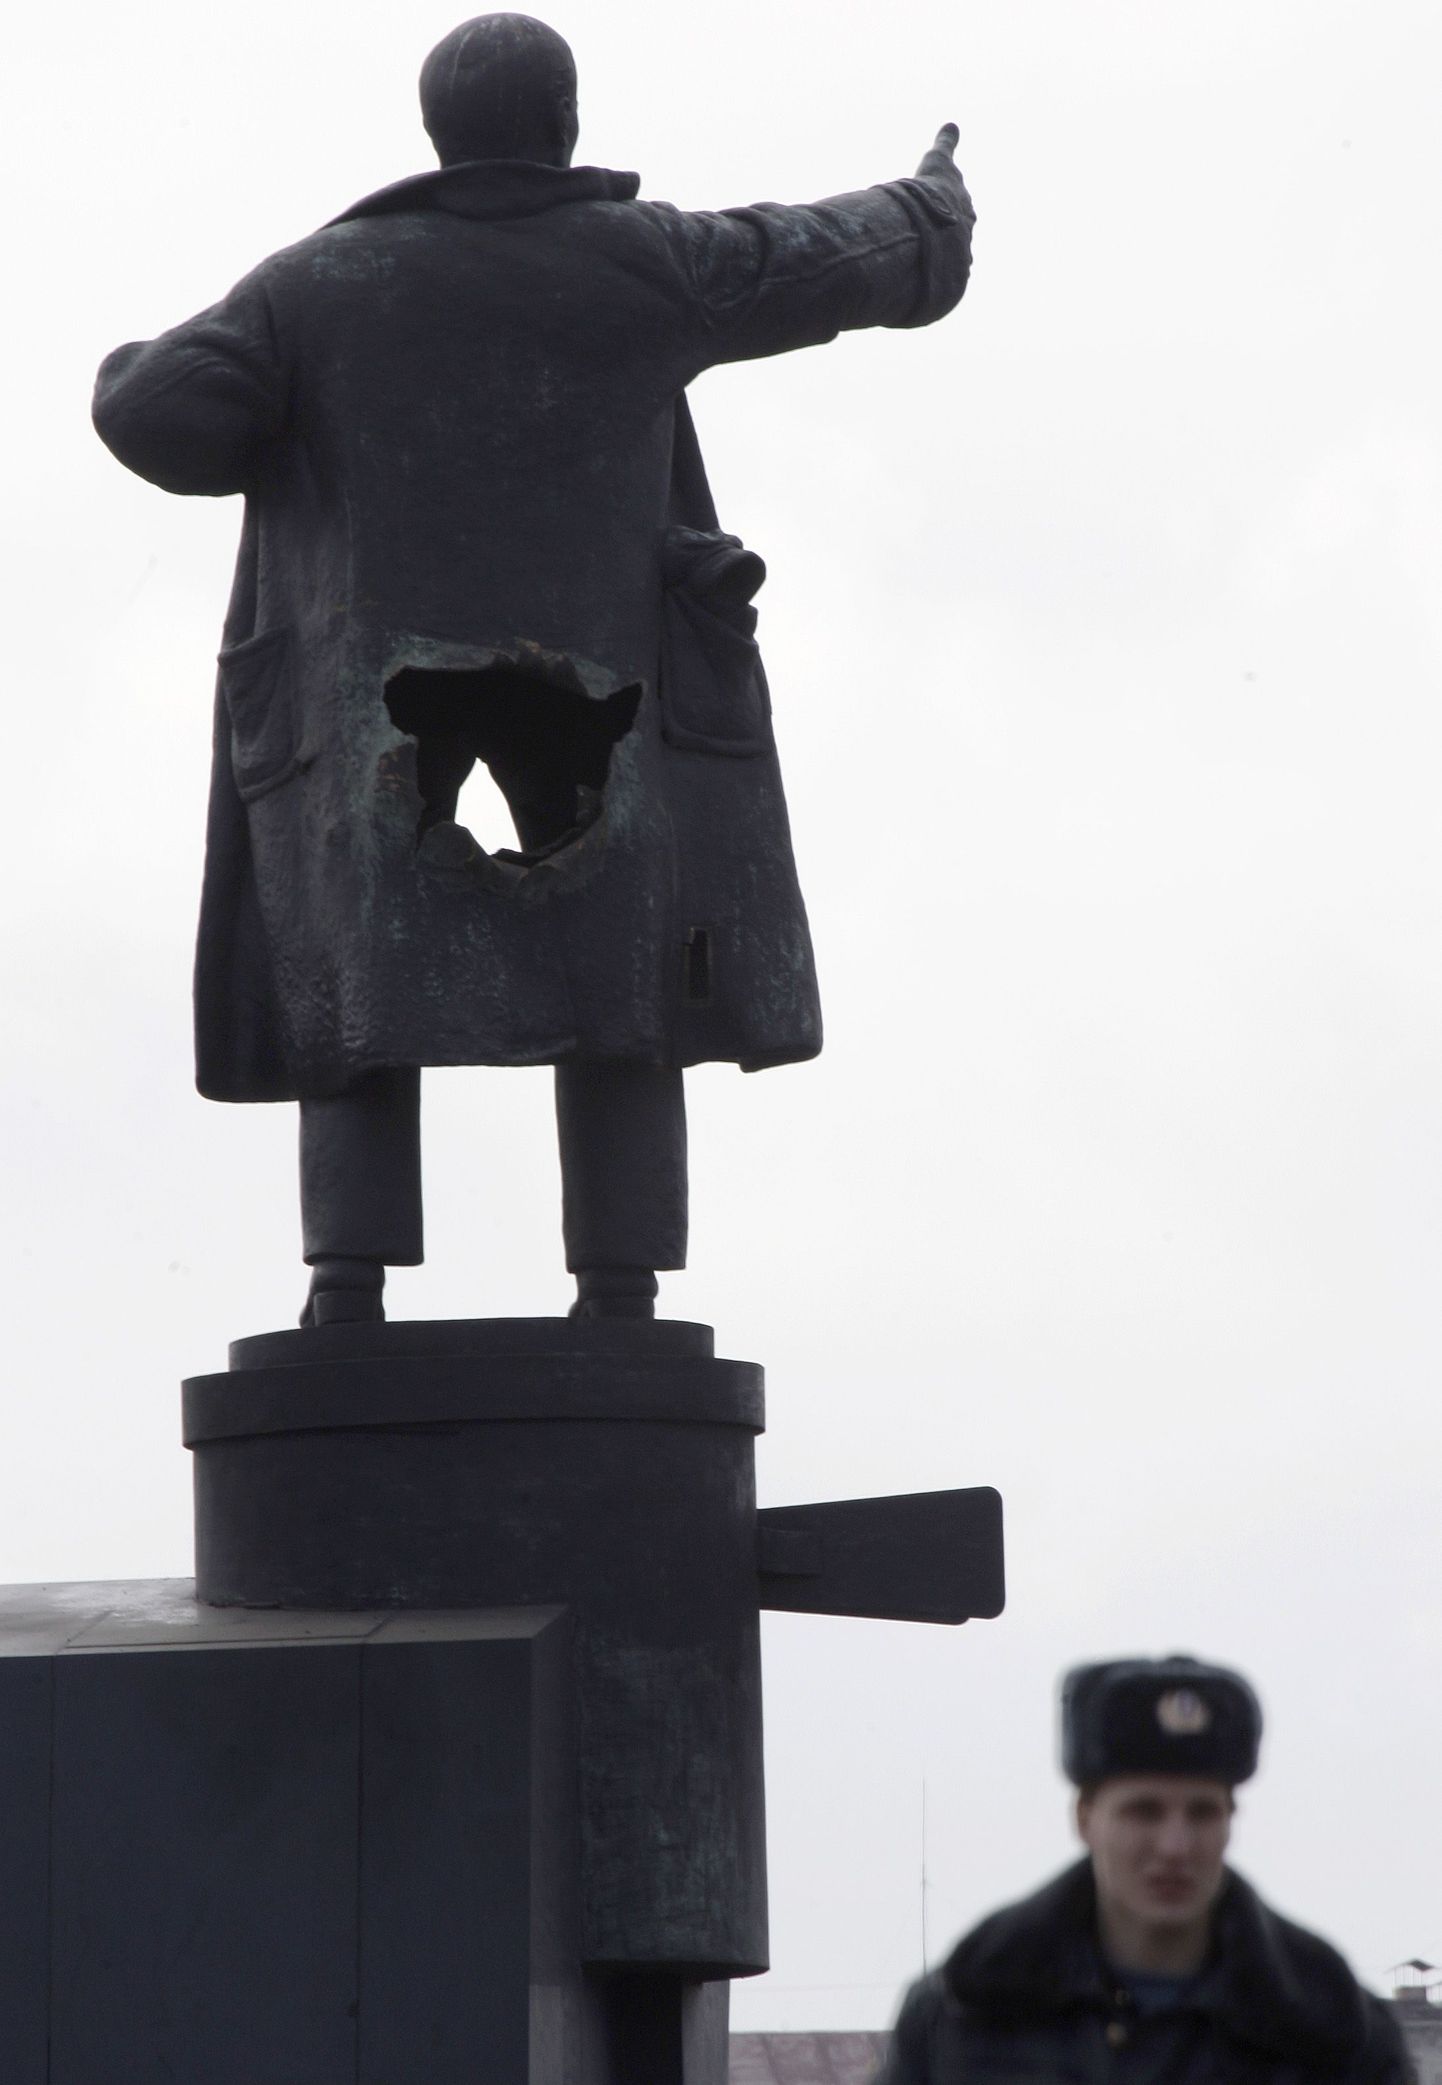 В апреле этого года злоумышленники взорвали знаменитый памятник Ленину на броневике у Финляндского вокзала в Петербурге. На фото последствия взрыва.